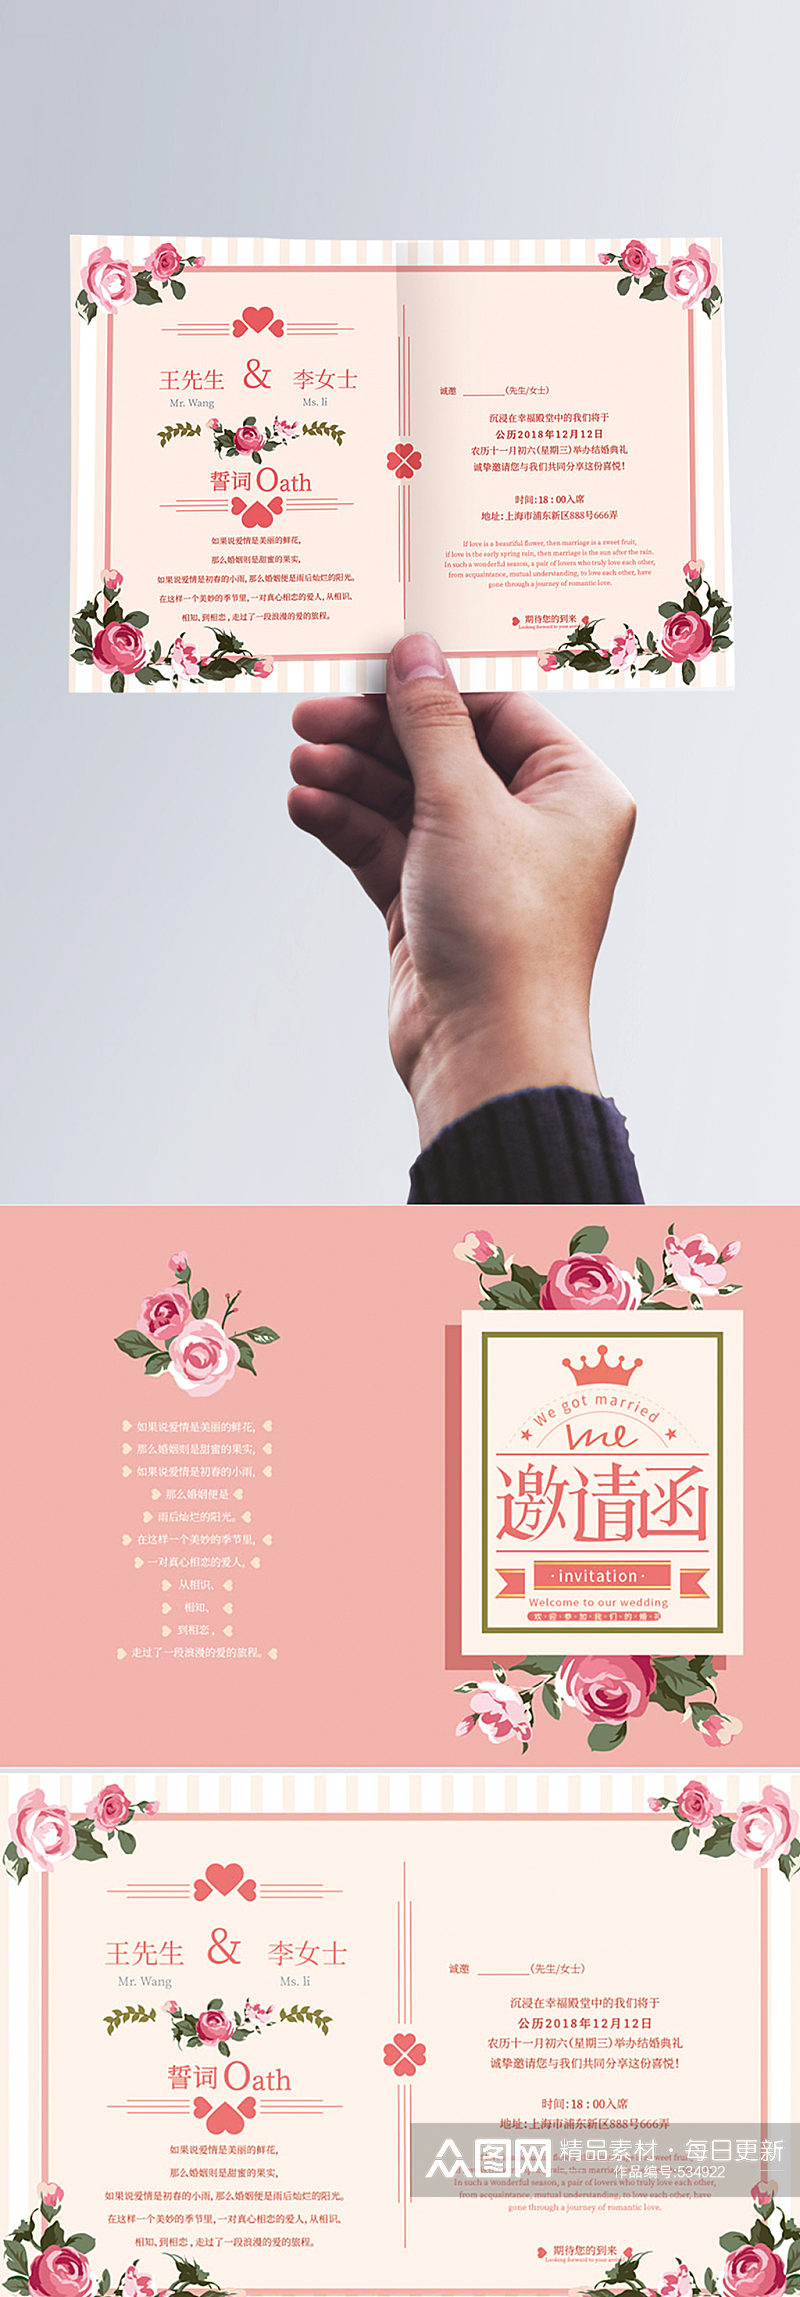 粉色玫瑰花卉婚礼邀请函素材